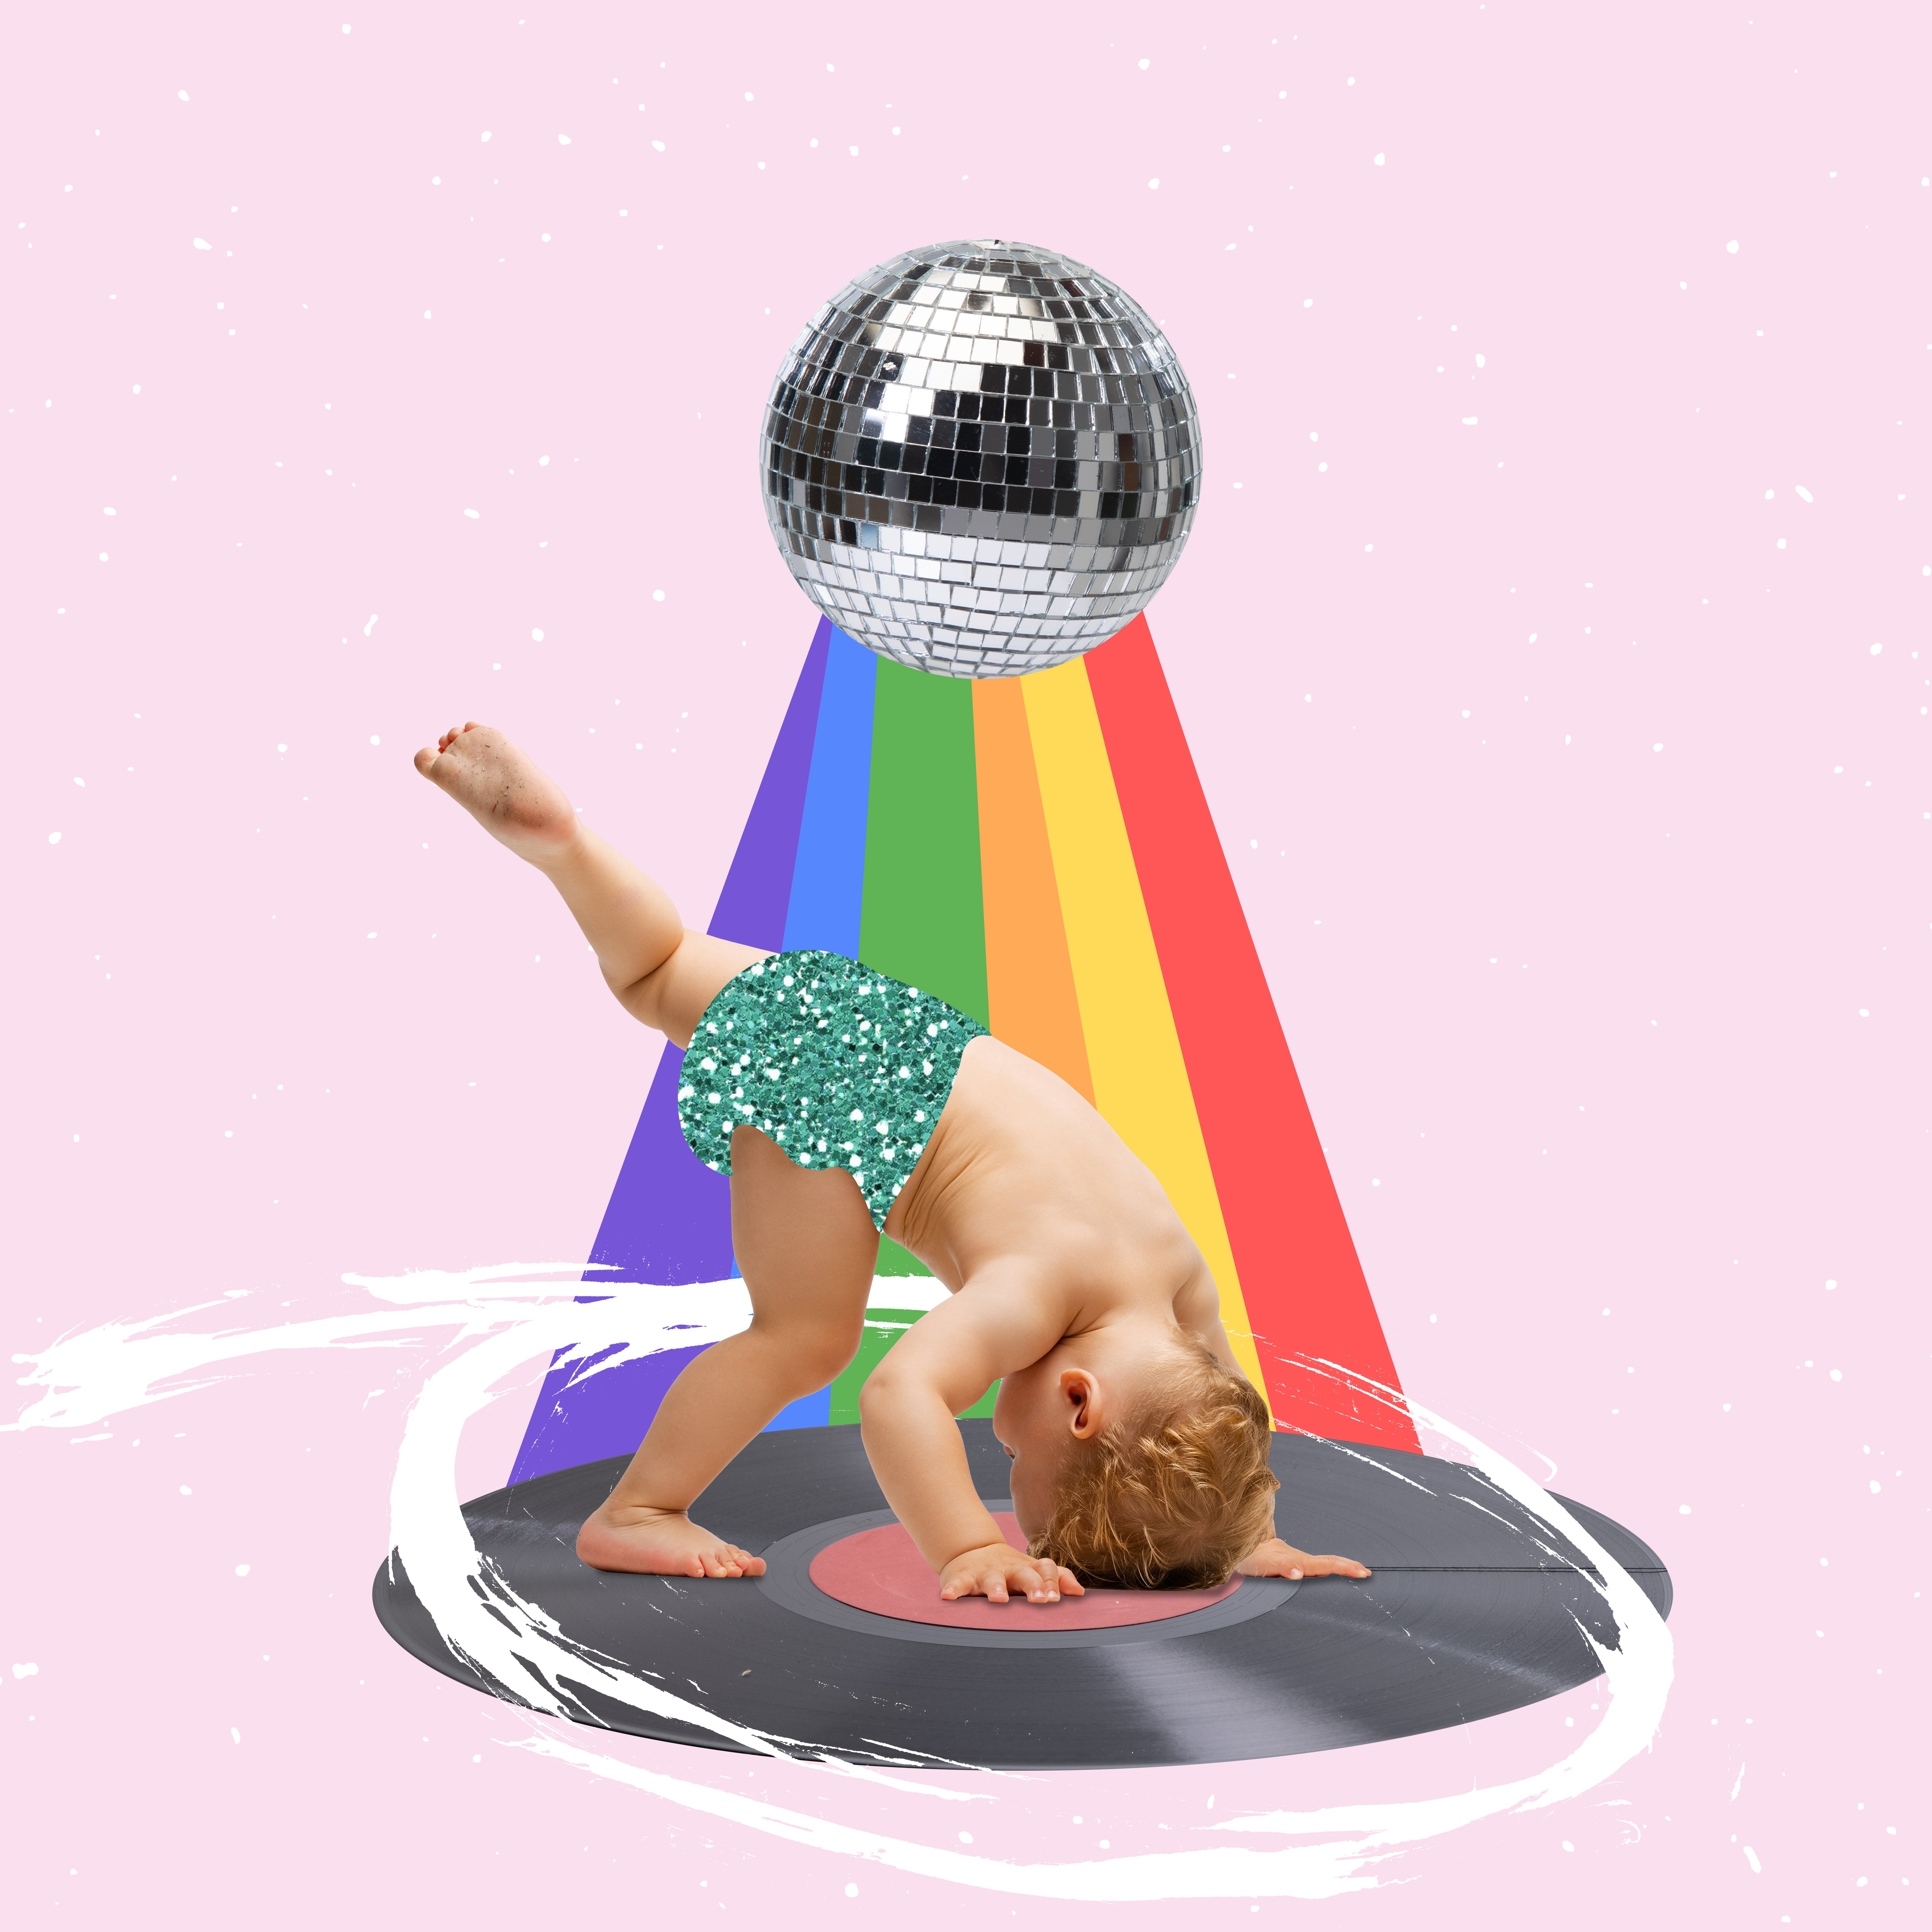 bild i kollageteknik med barn som dansar i regnbågssken med en discokula ovanför sig, mot rosa bakgrund